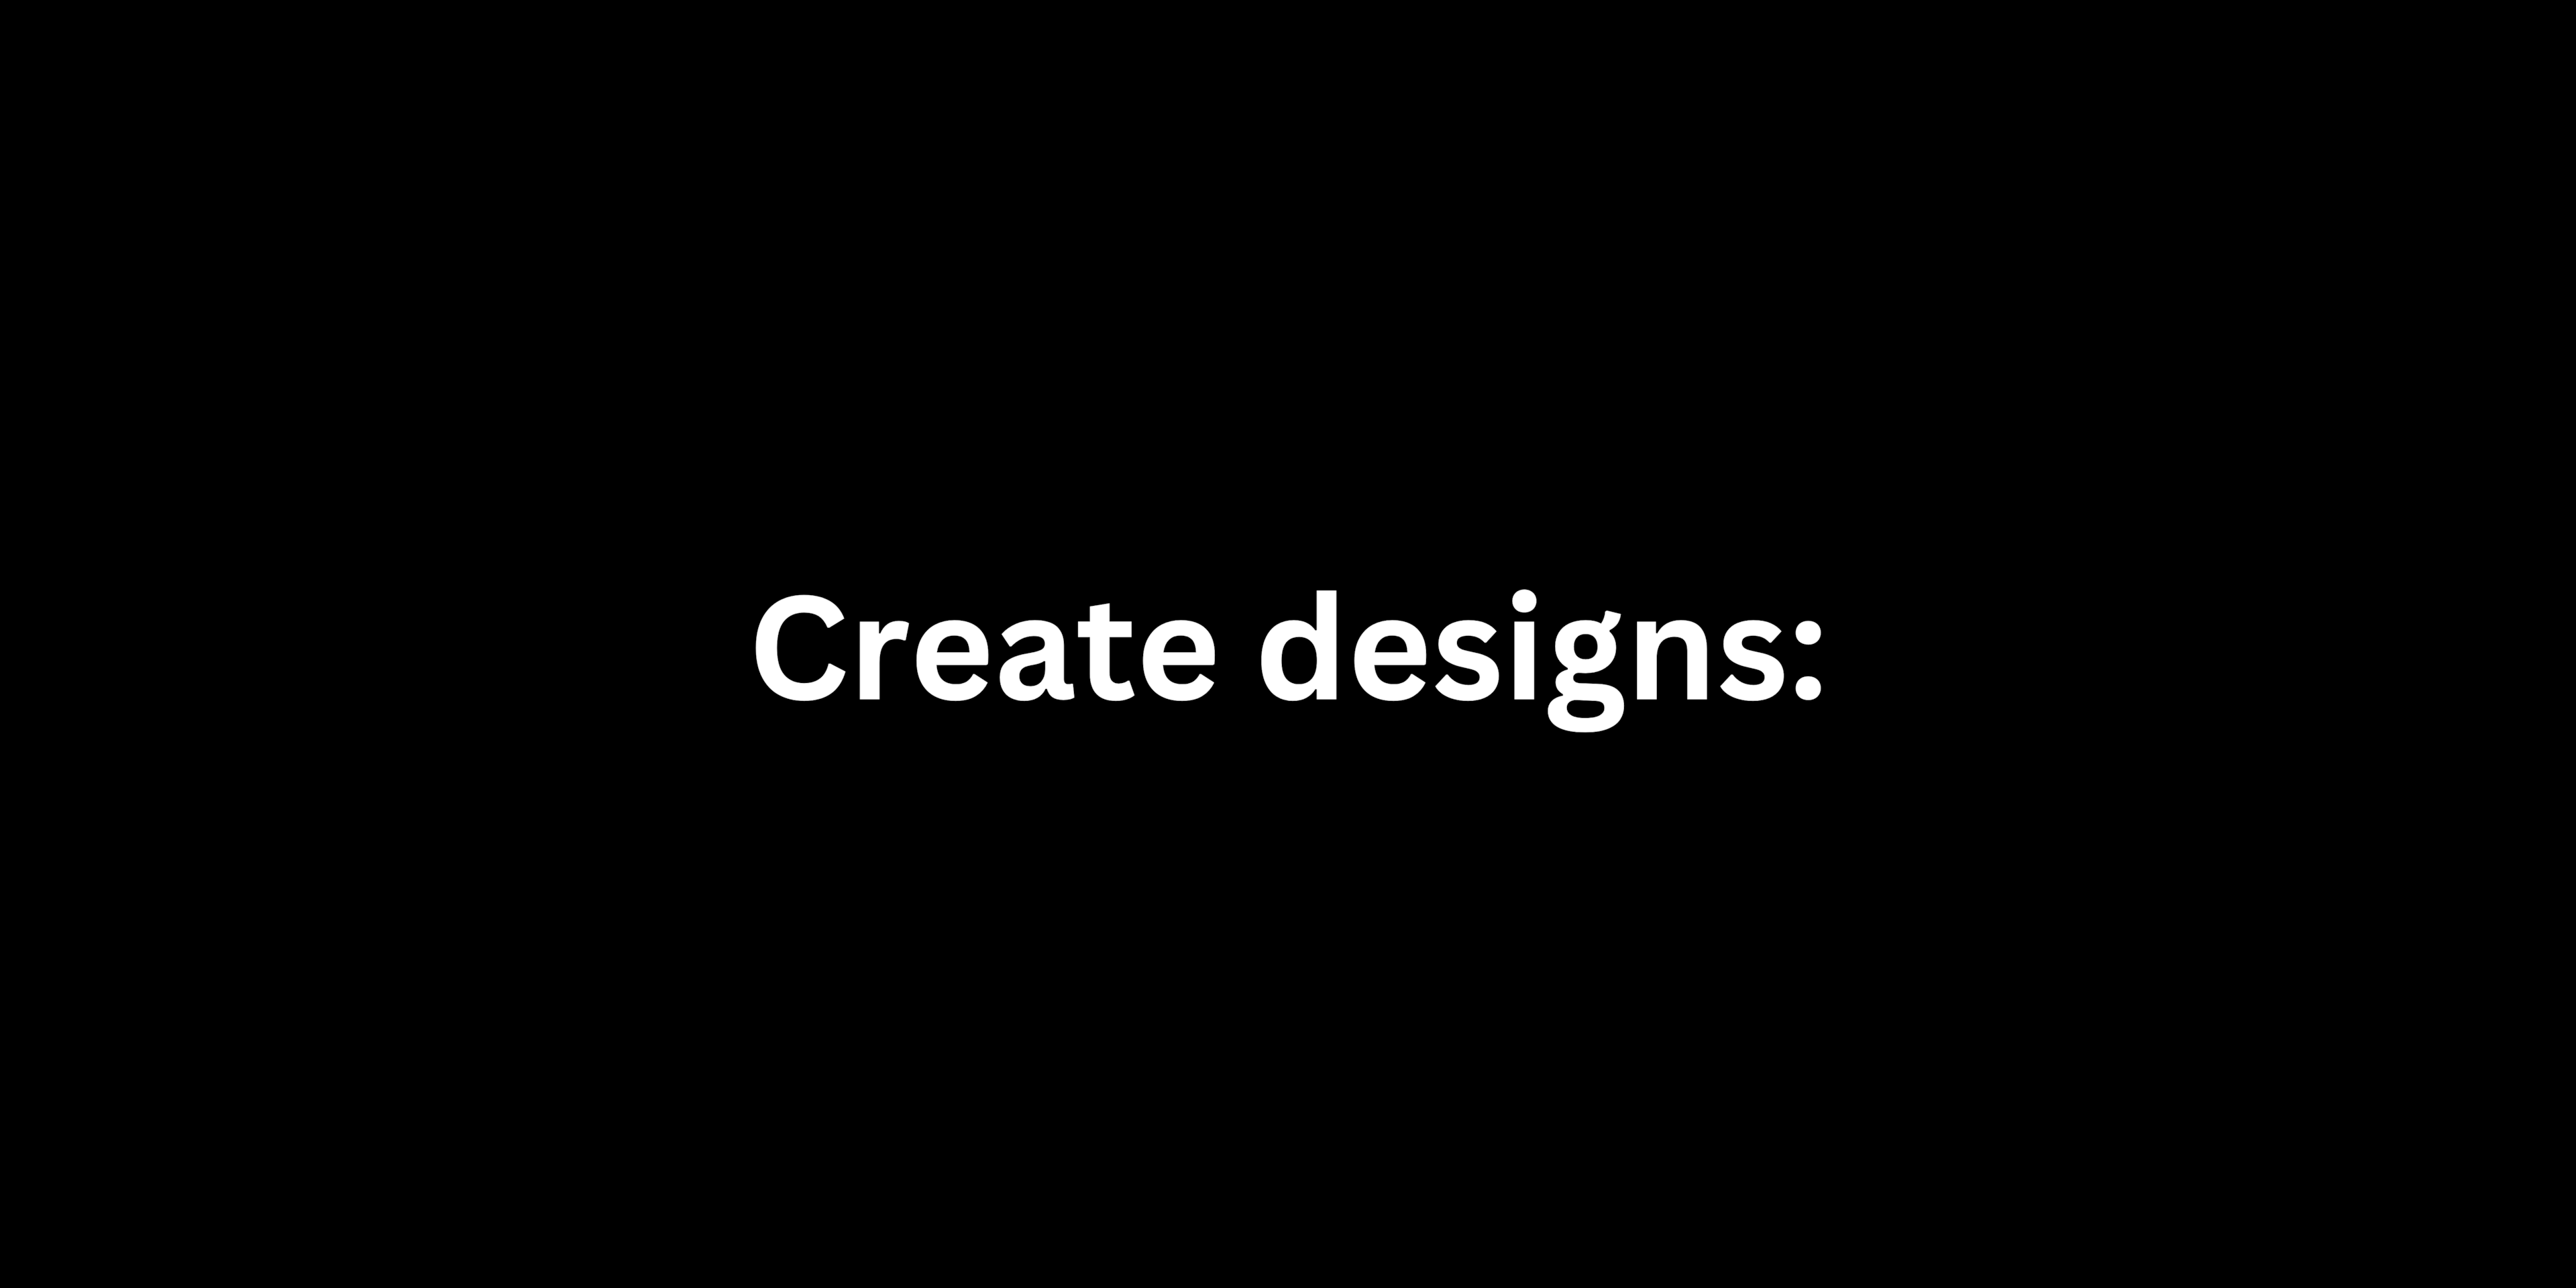 Create designs: